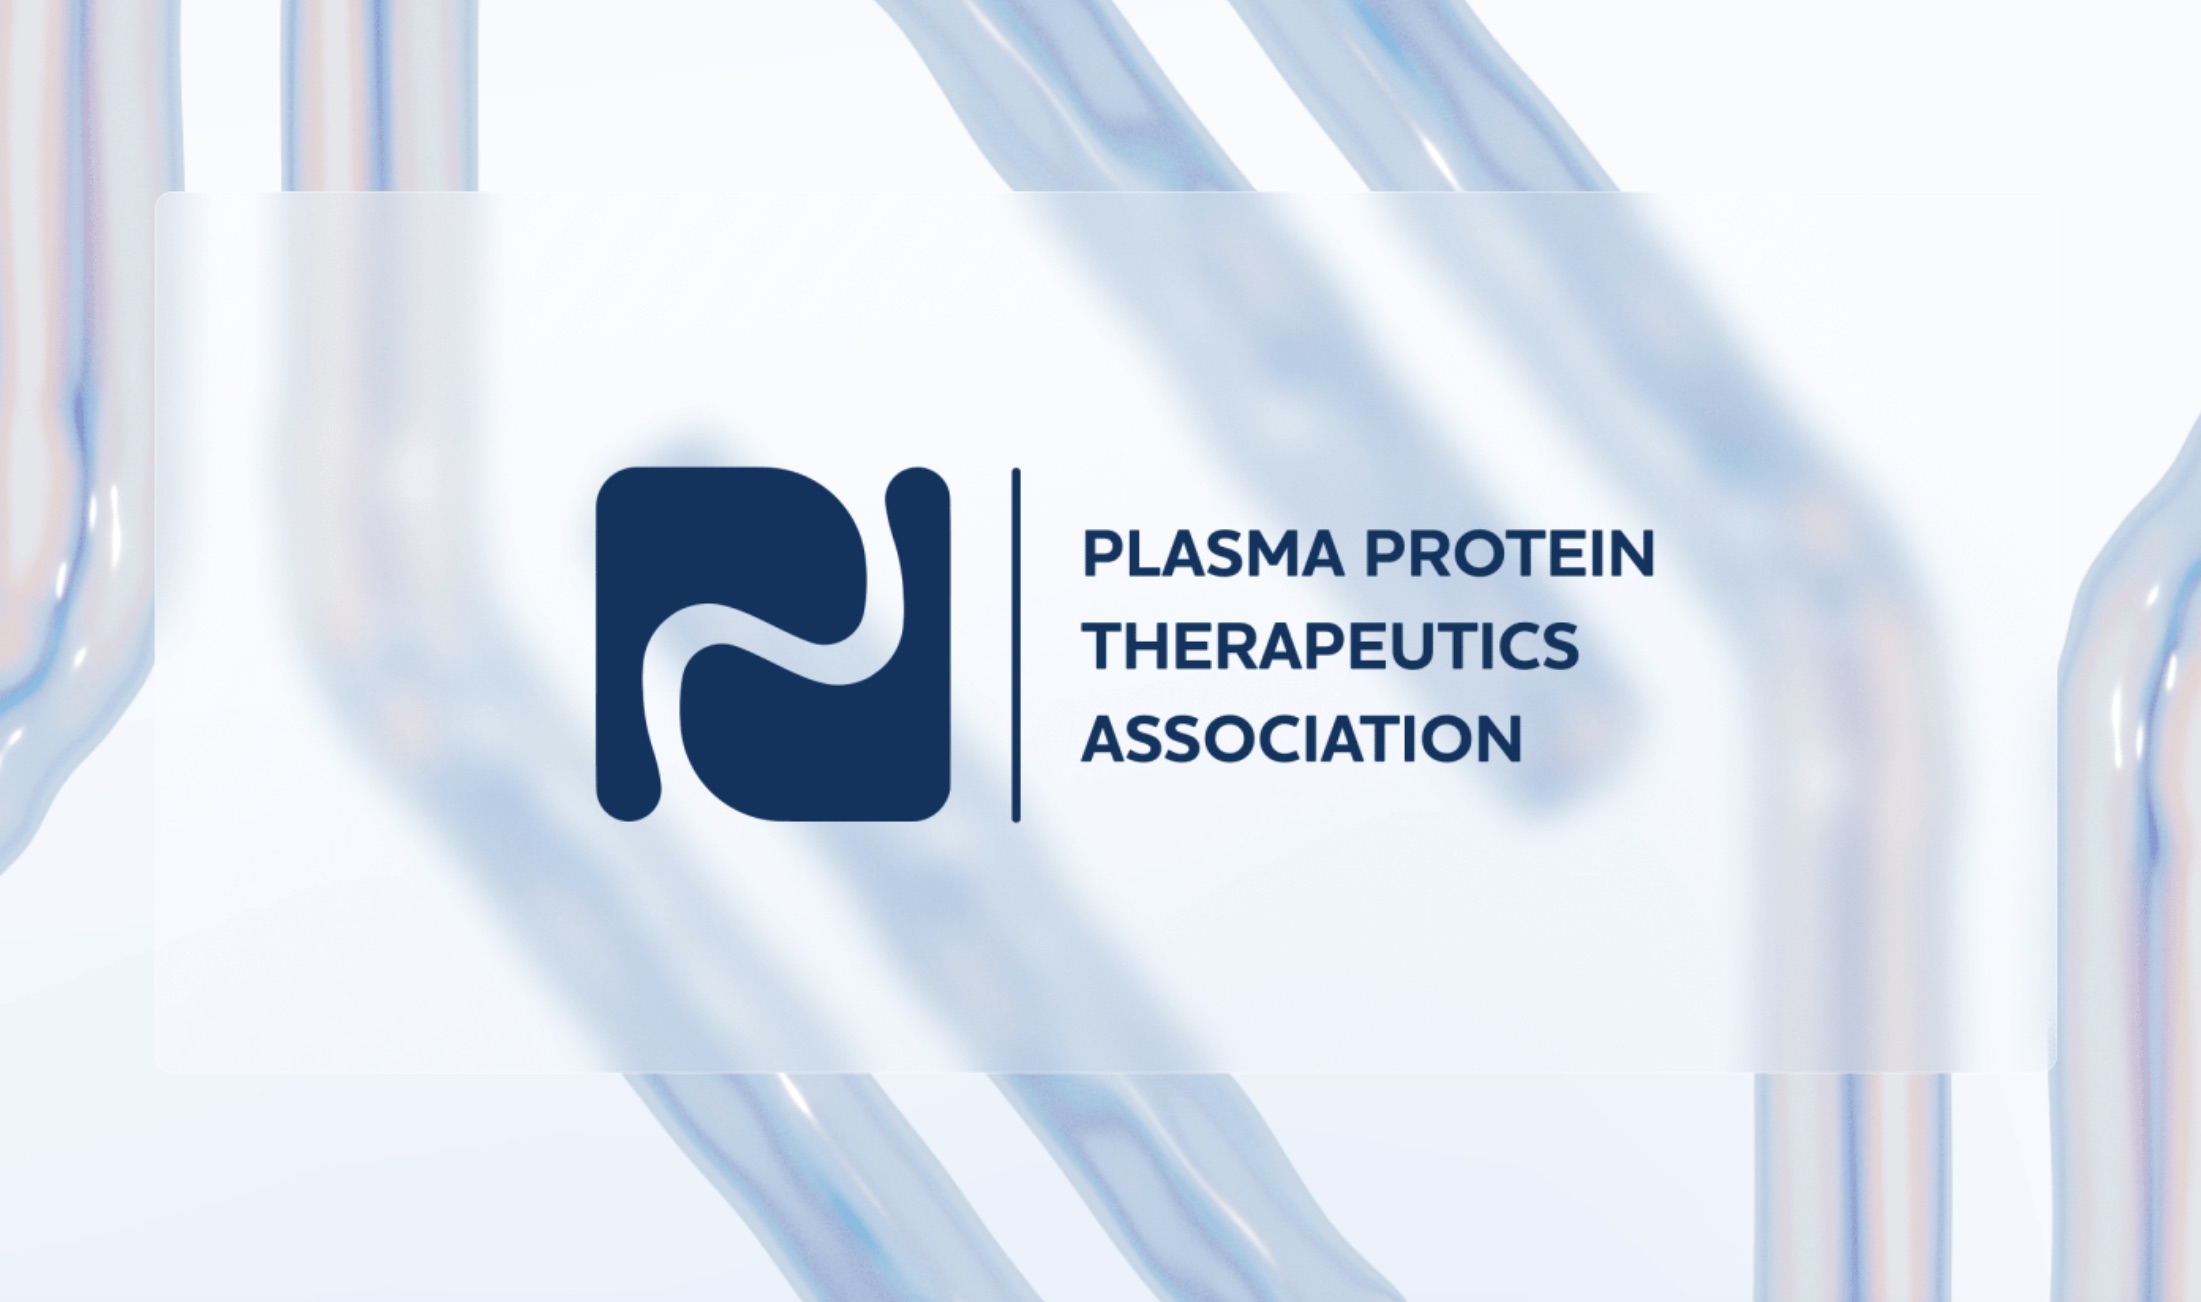 Plasma Protein Therapeutics Association